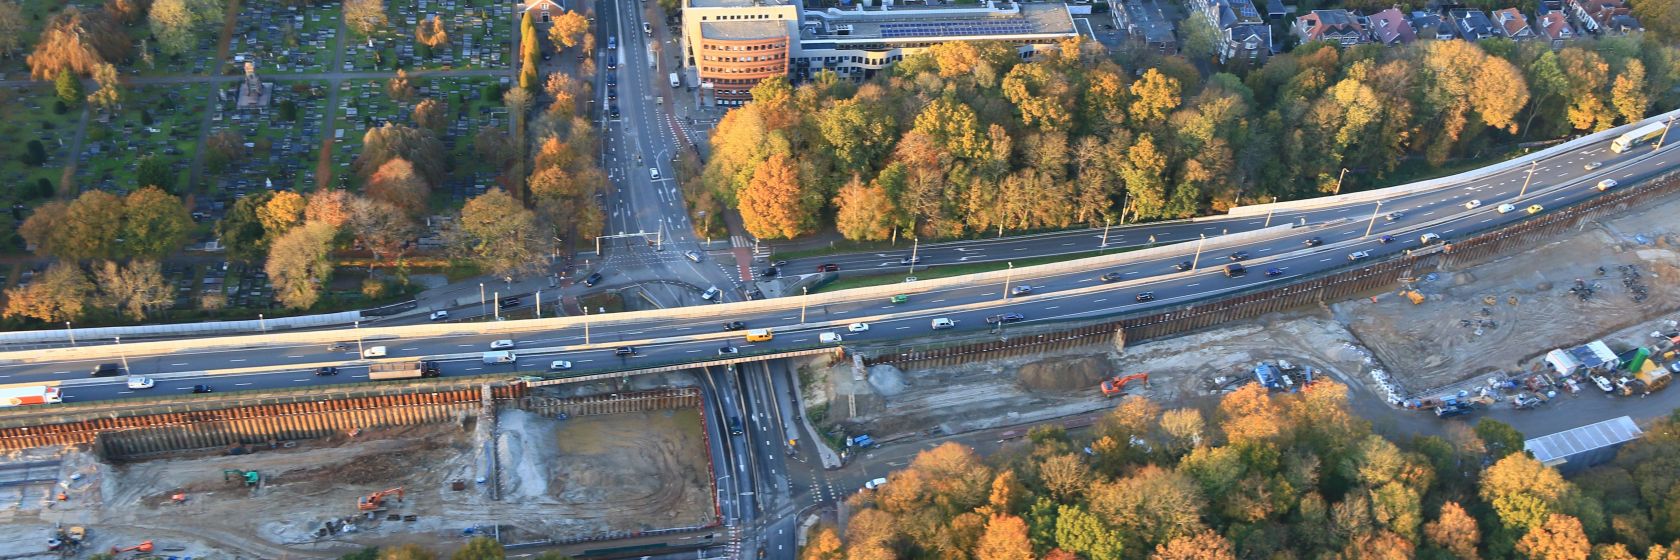 De plaats voor het Geheugenbalkon bij het toekomstige Zuiderpark. (Foto: aanpak ring zuid.).